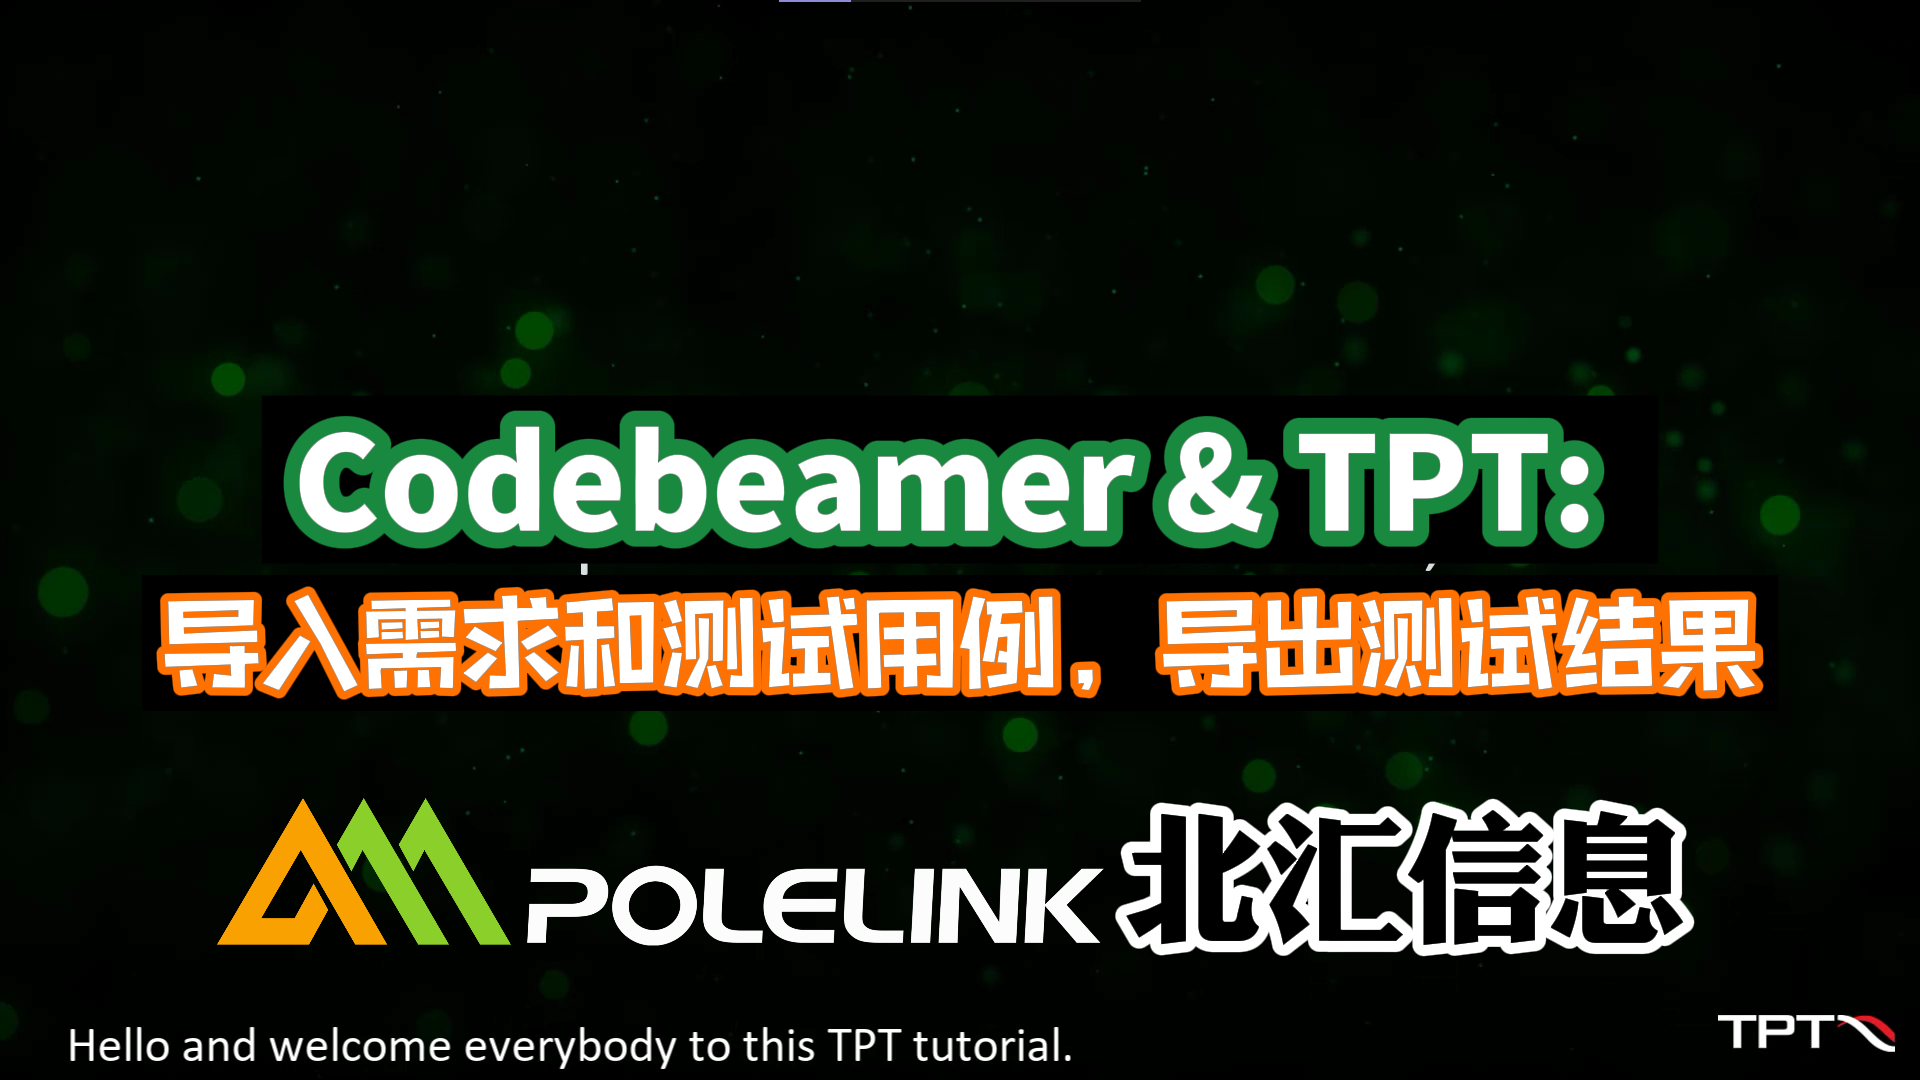 Codebeamer & TPT: 导入需求和测试用例，导出测试结果#TPT
#Codebeamer
 